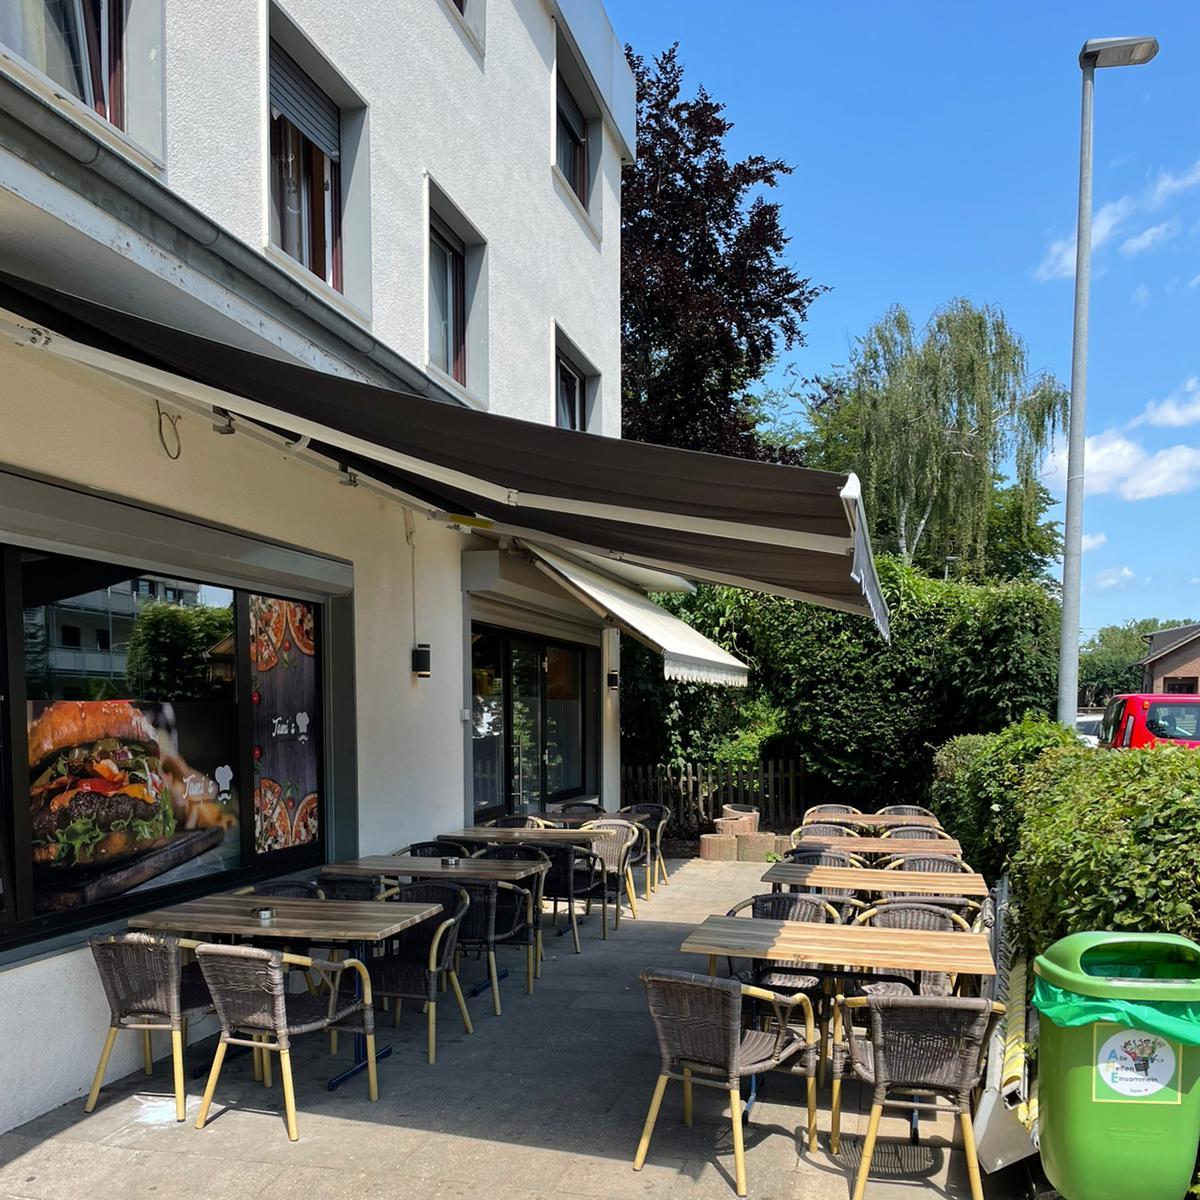 Restaurant "Tami’s Döner, Pizza, Burger Imbiss" in Bergheim